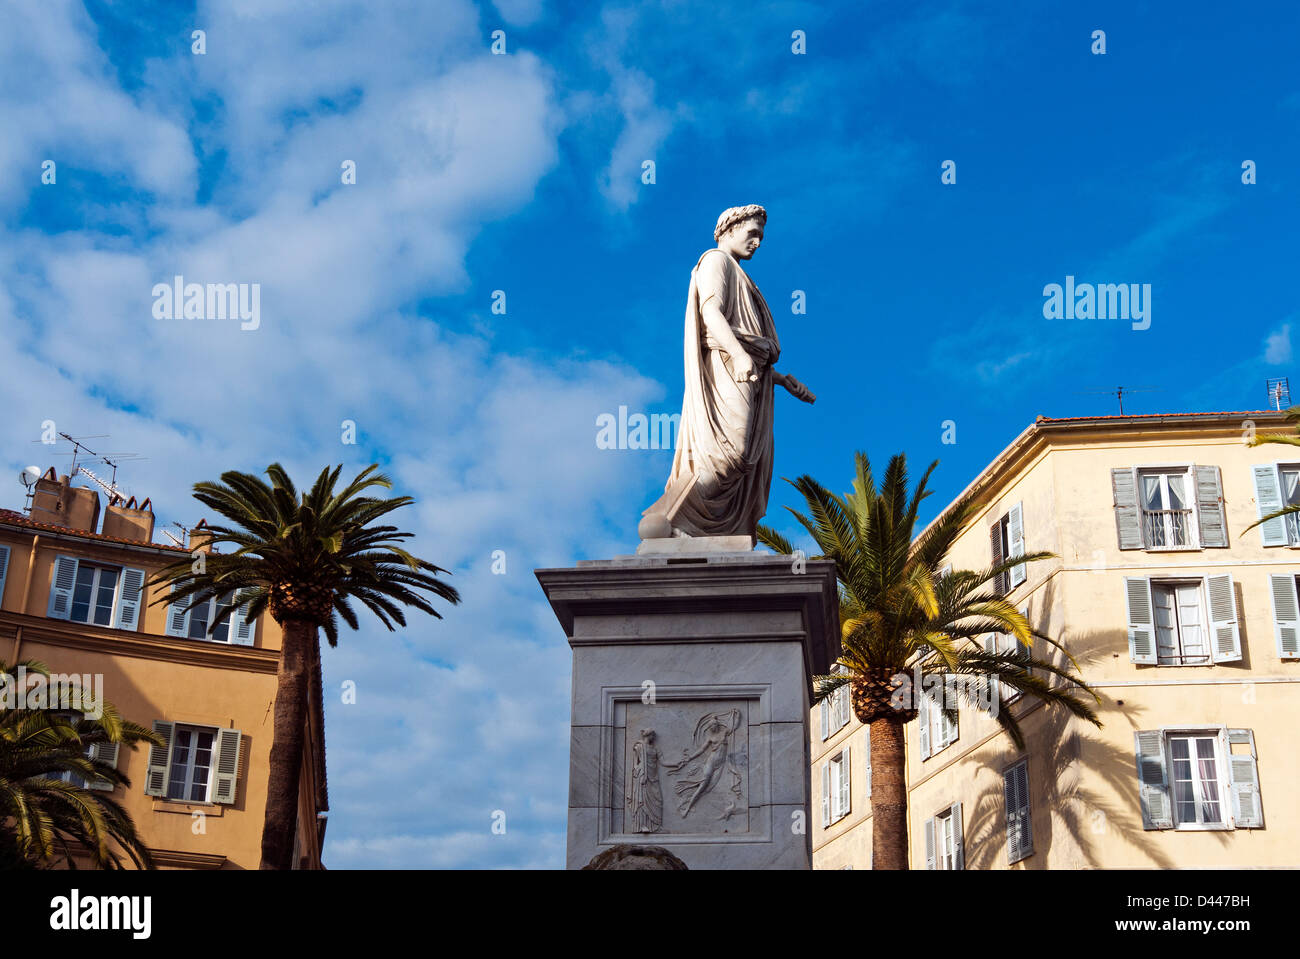 Napoleon statue in Piazza di Olmu, Ajaccio, Corsica, France, Europe Stock Photo